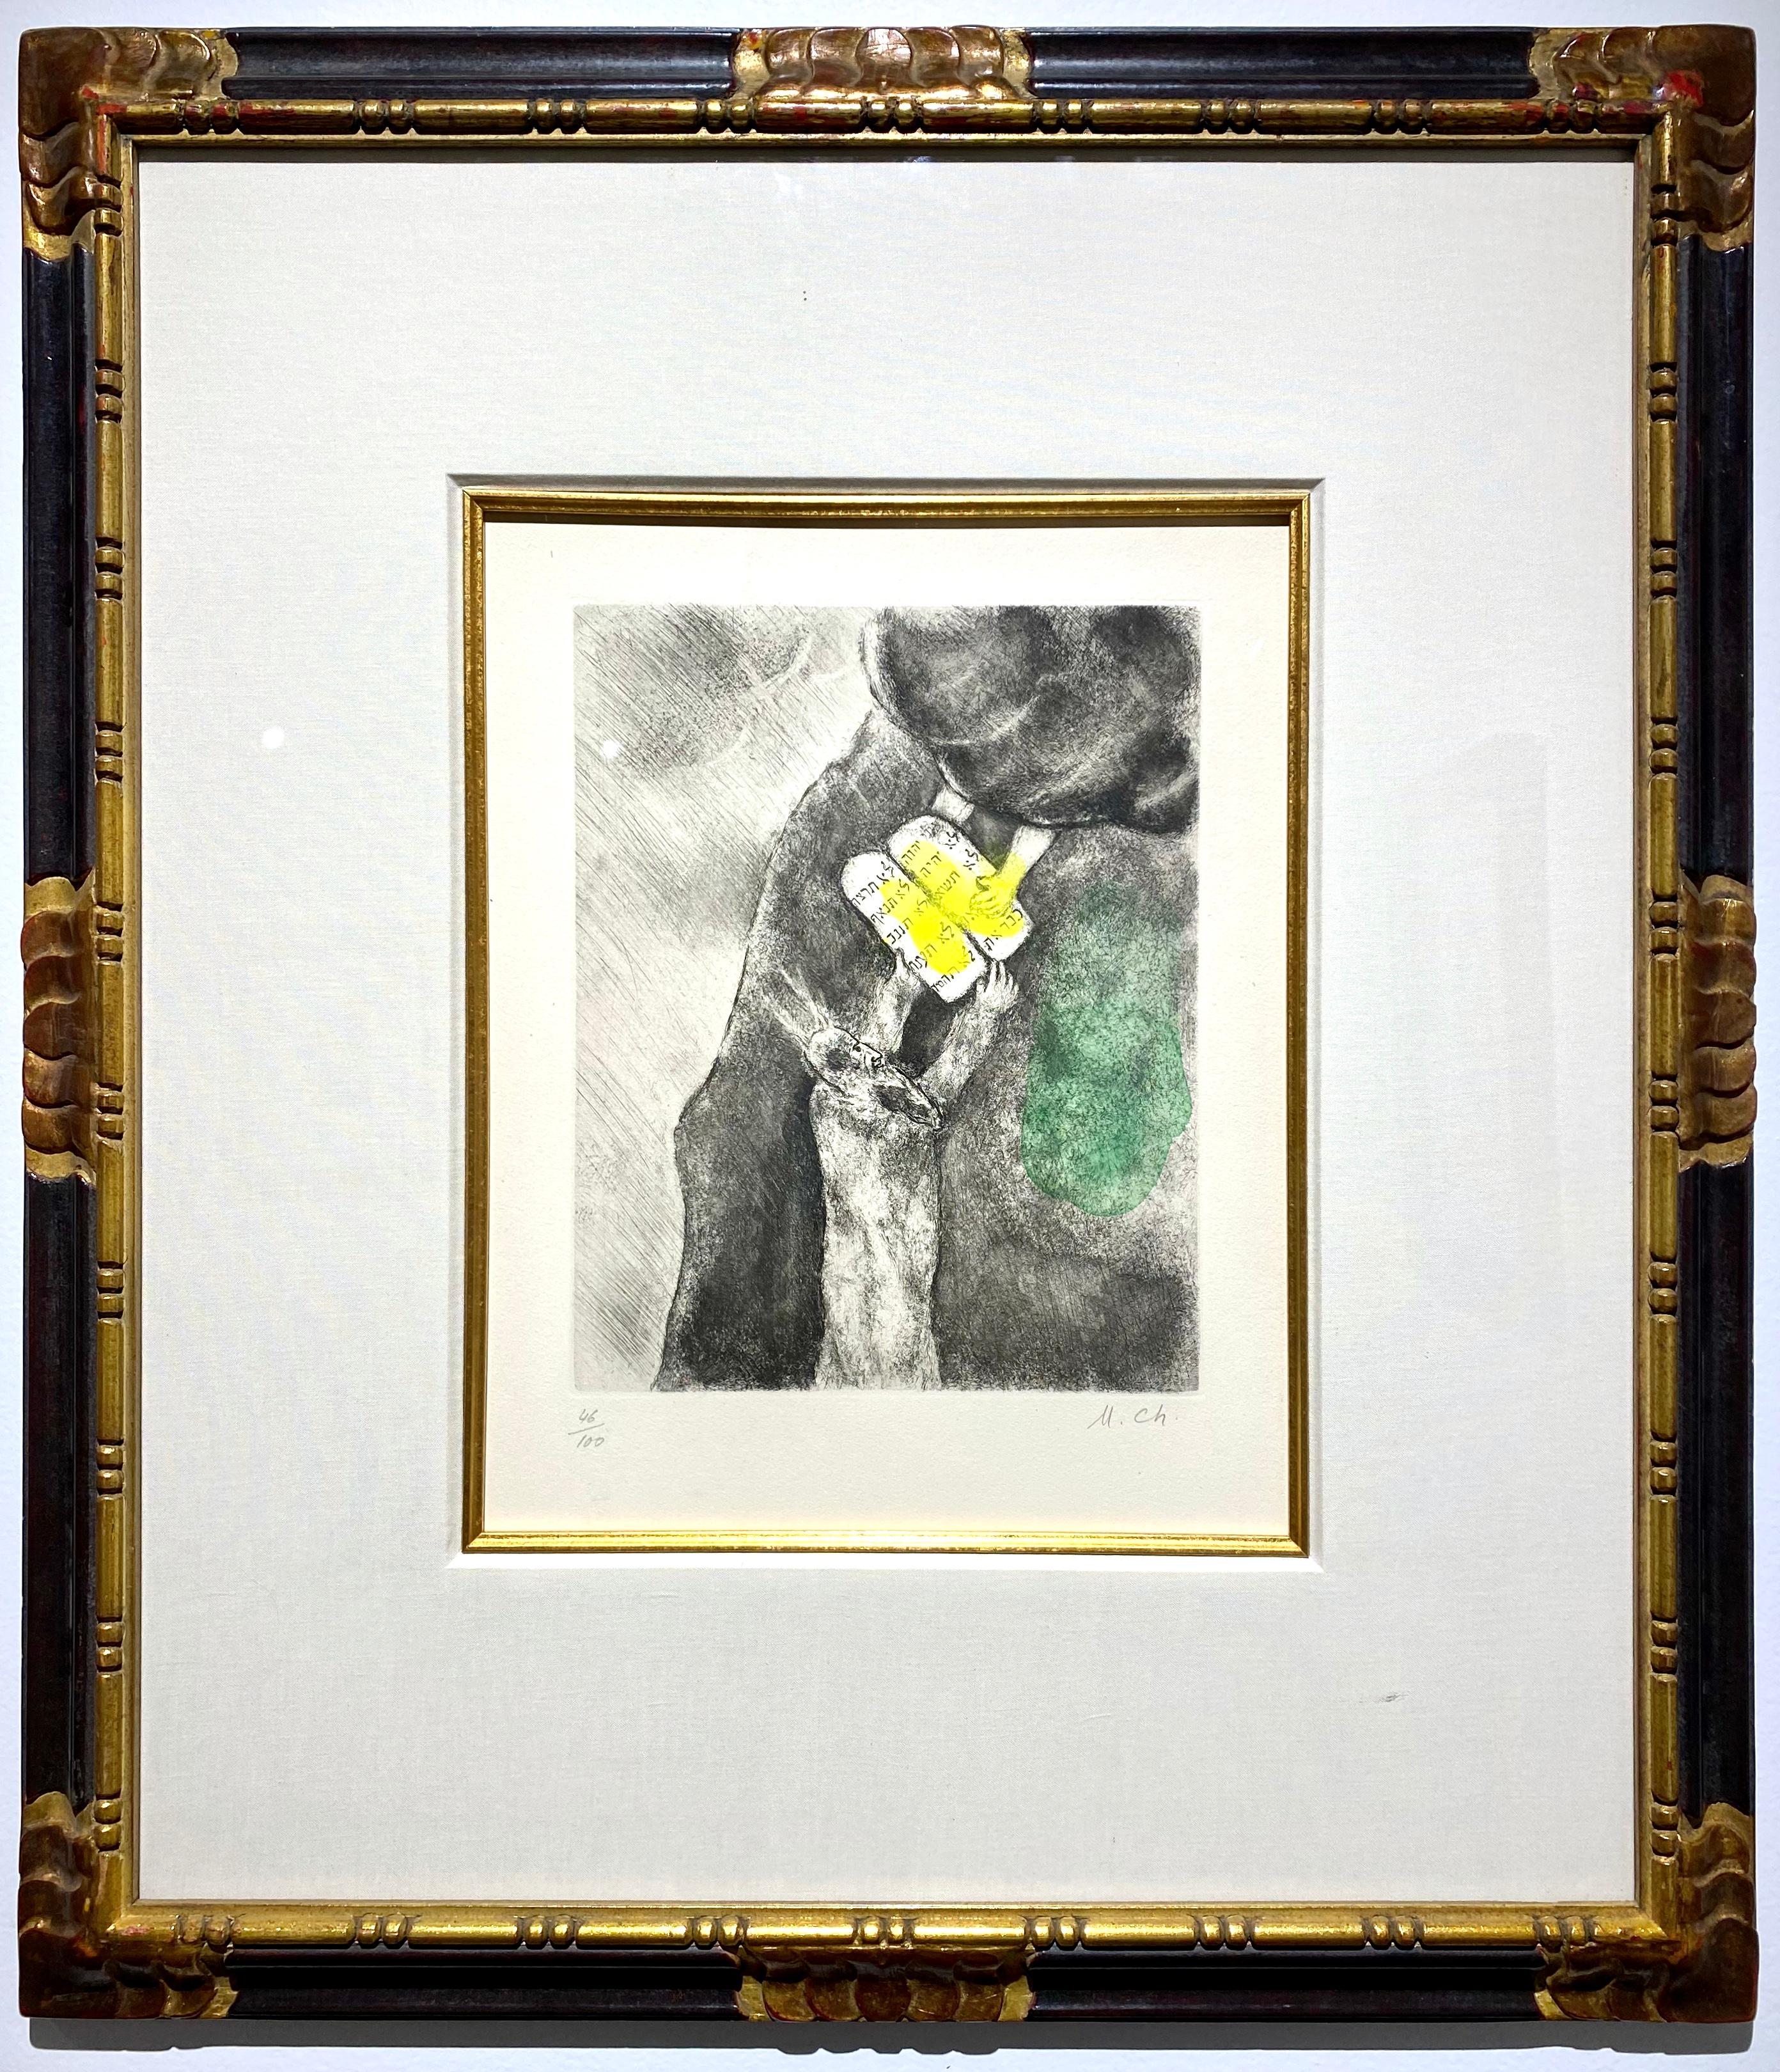 MARC CHAGALL (1887-1985)
"Les dix commandements 
Gravure originale avec aquarelle
numéroté 46/100 dans la marge inférieure gauche,Papier
Monogramme de Marc Chagall "M.Ch".
(Vitebsk, 1887 - Saint-Paul, 1985)
Au crayon dans la marge inférieure